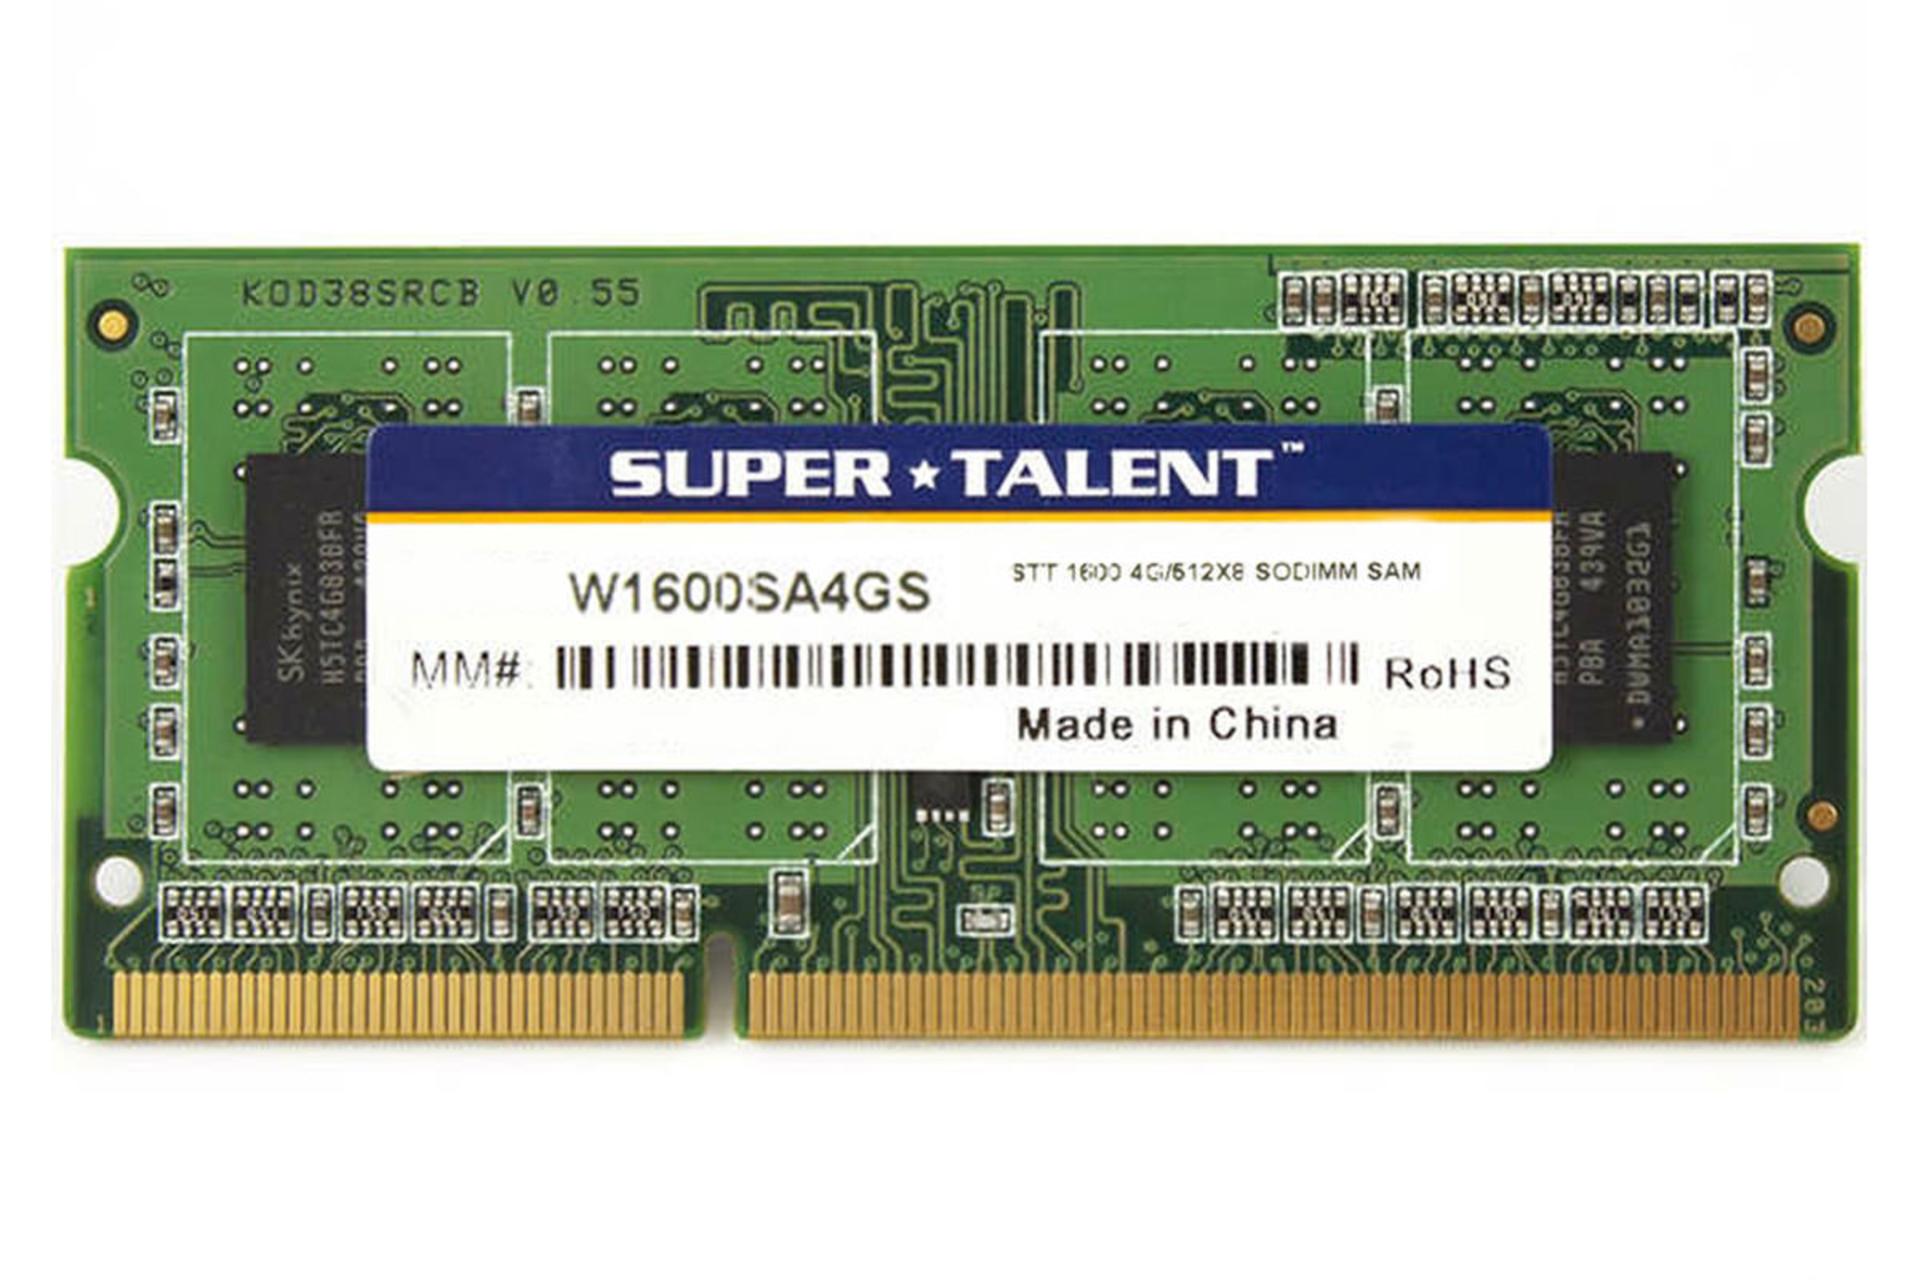  رم سوپرتلنت W1600SA4GS ظرفیت 4 گیگابایت از نوع DDR3-1600